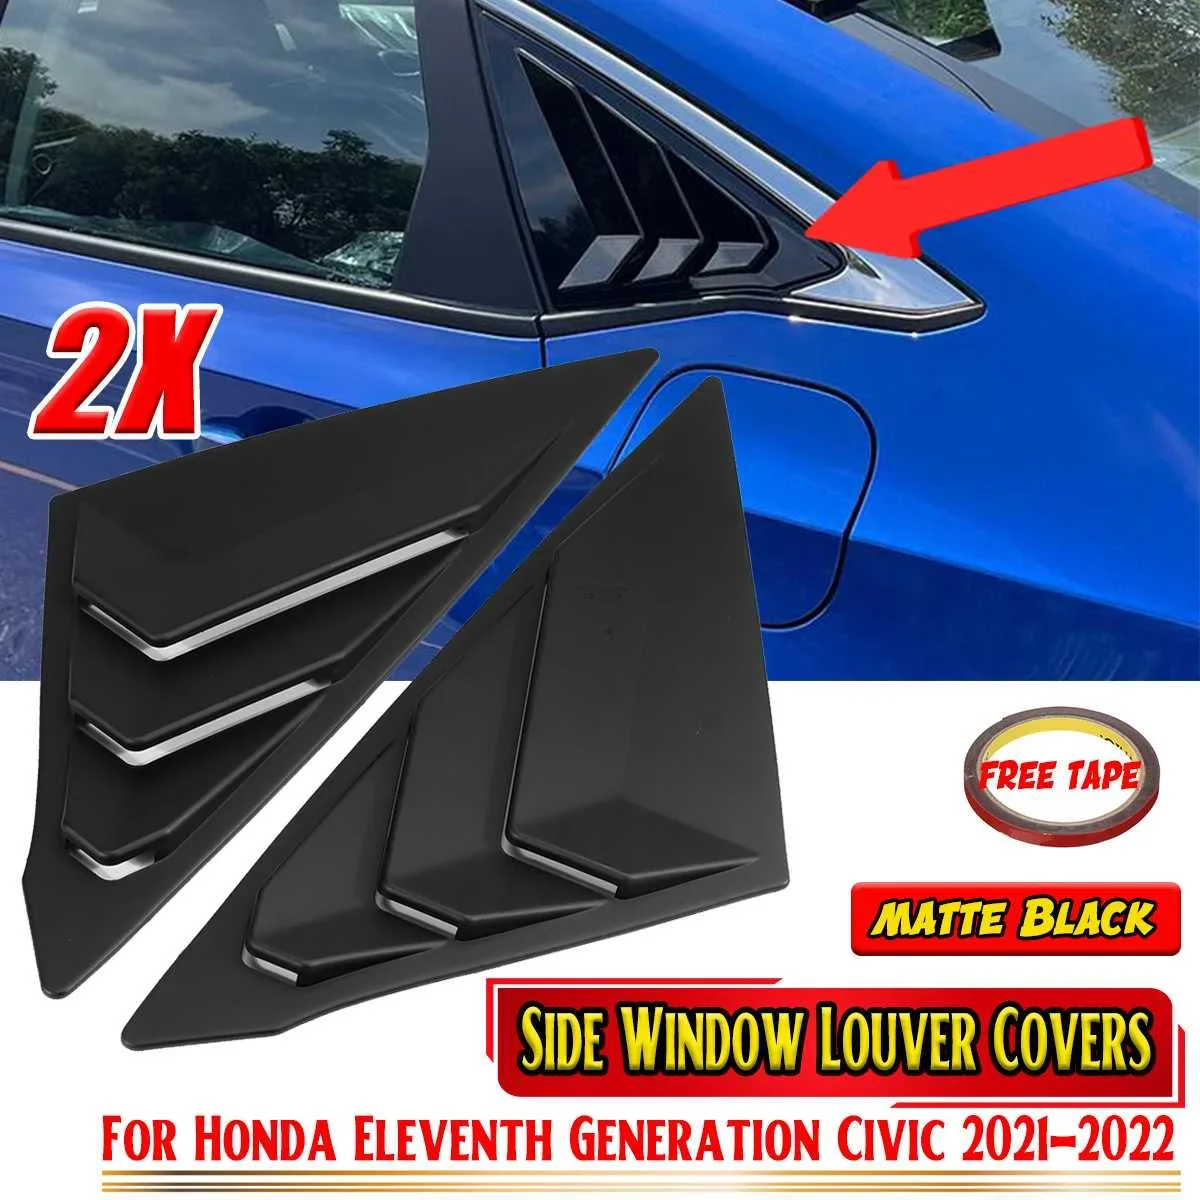 

Новые автомобильные задние боковые оконные жалюзи, накладки на вентиляционные отверстия, обшивка оконных жалюзи для Honda For Civic 11-го и 11-го поколения 2021-2022